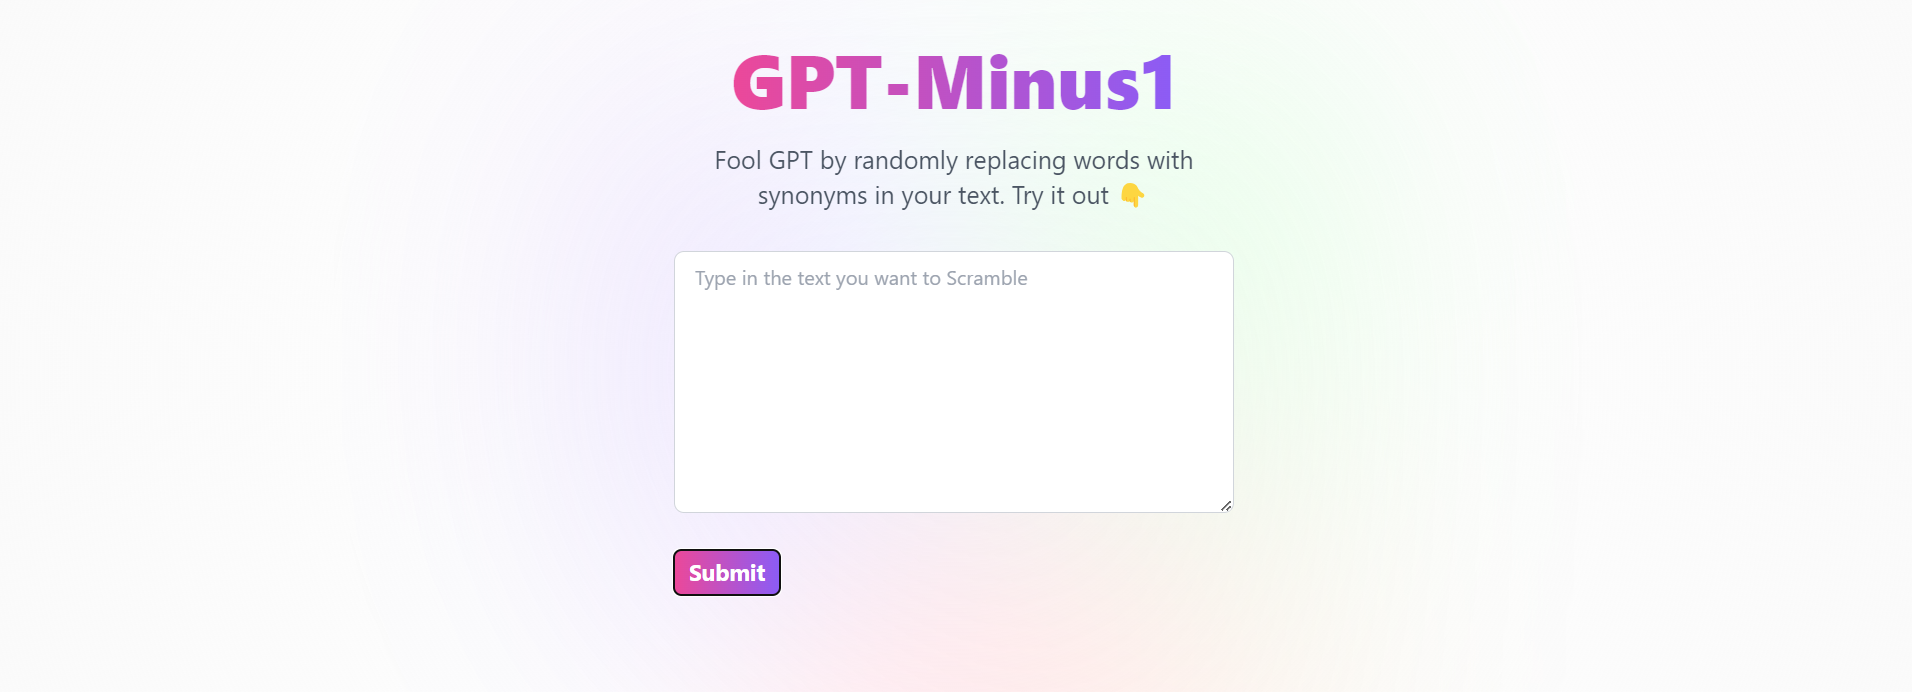 GPT - Minus1